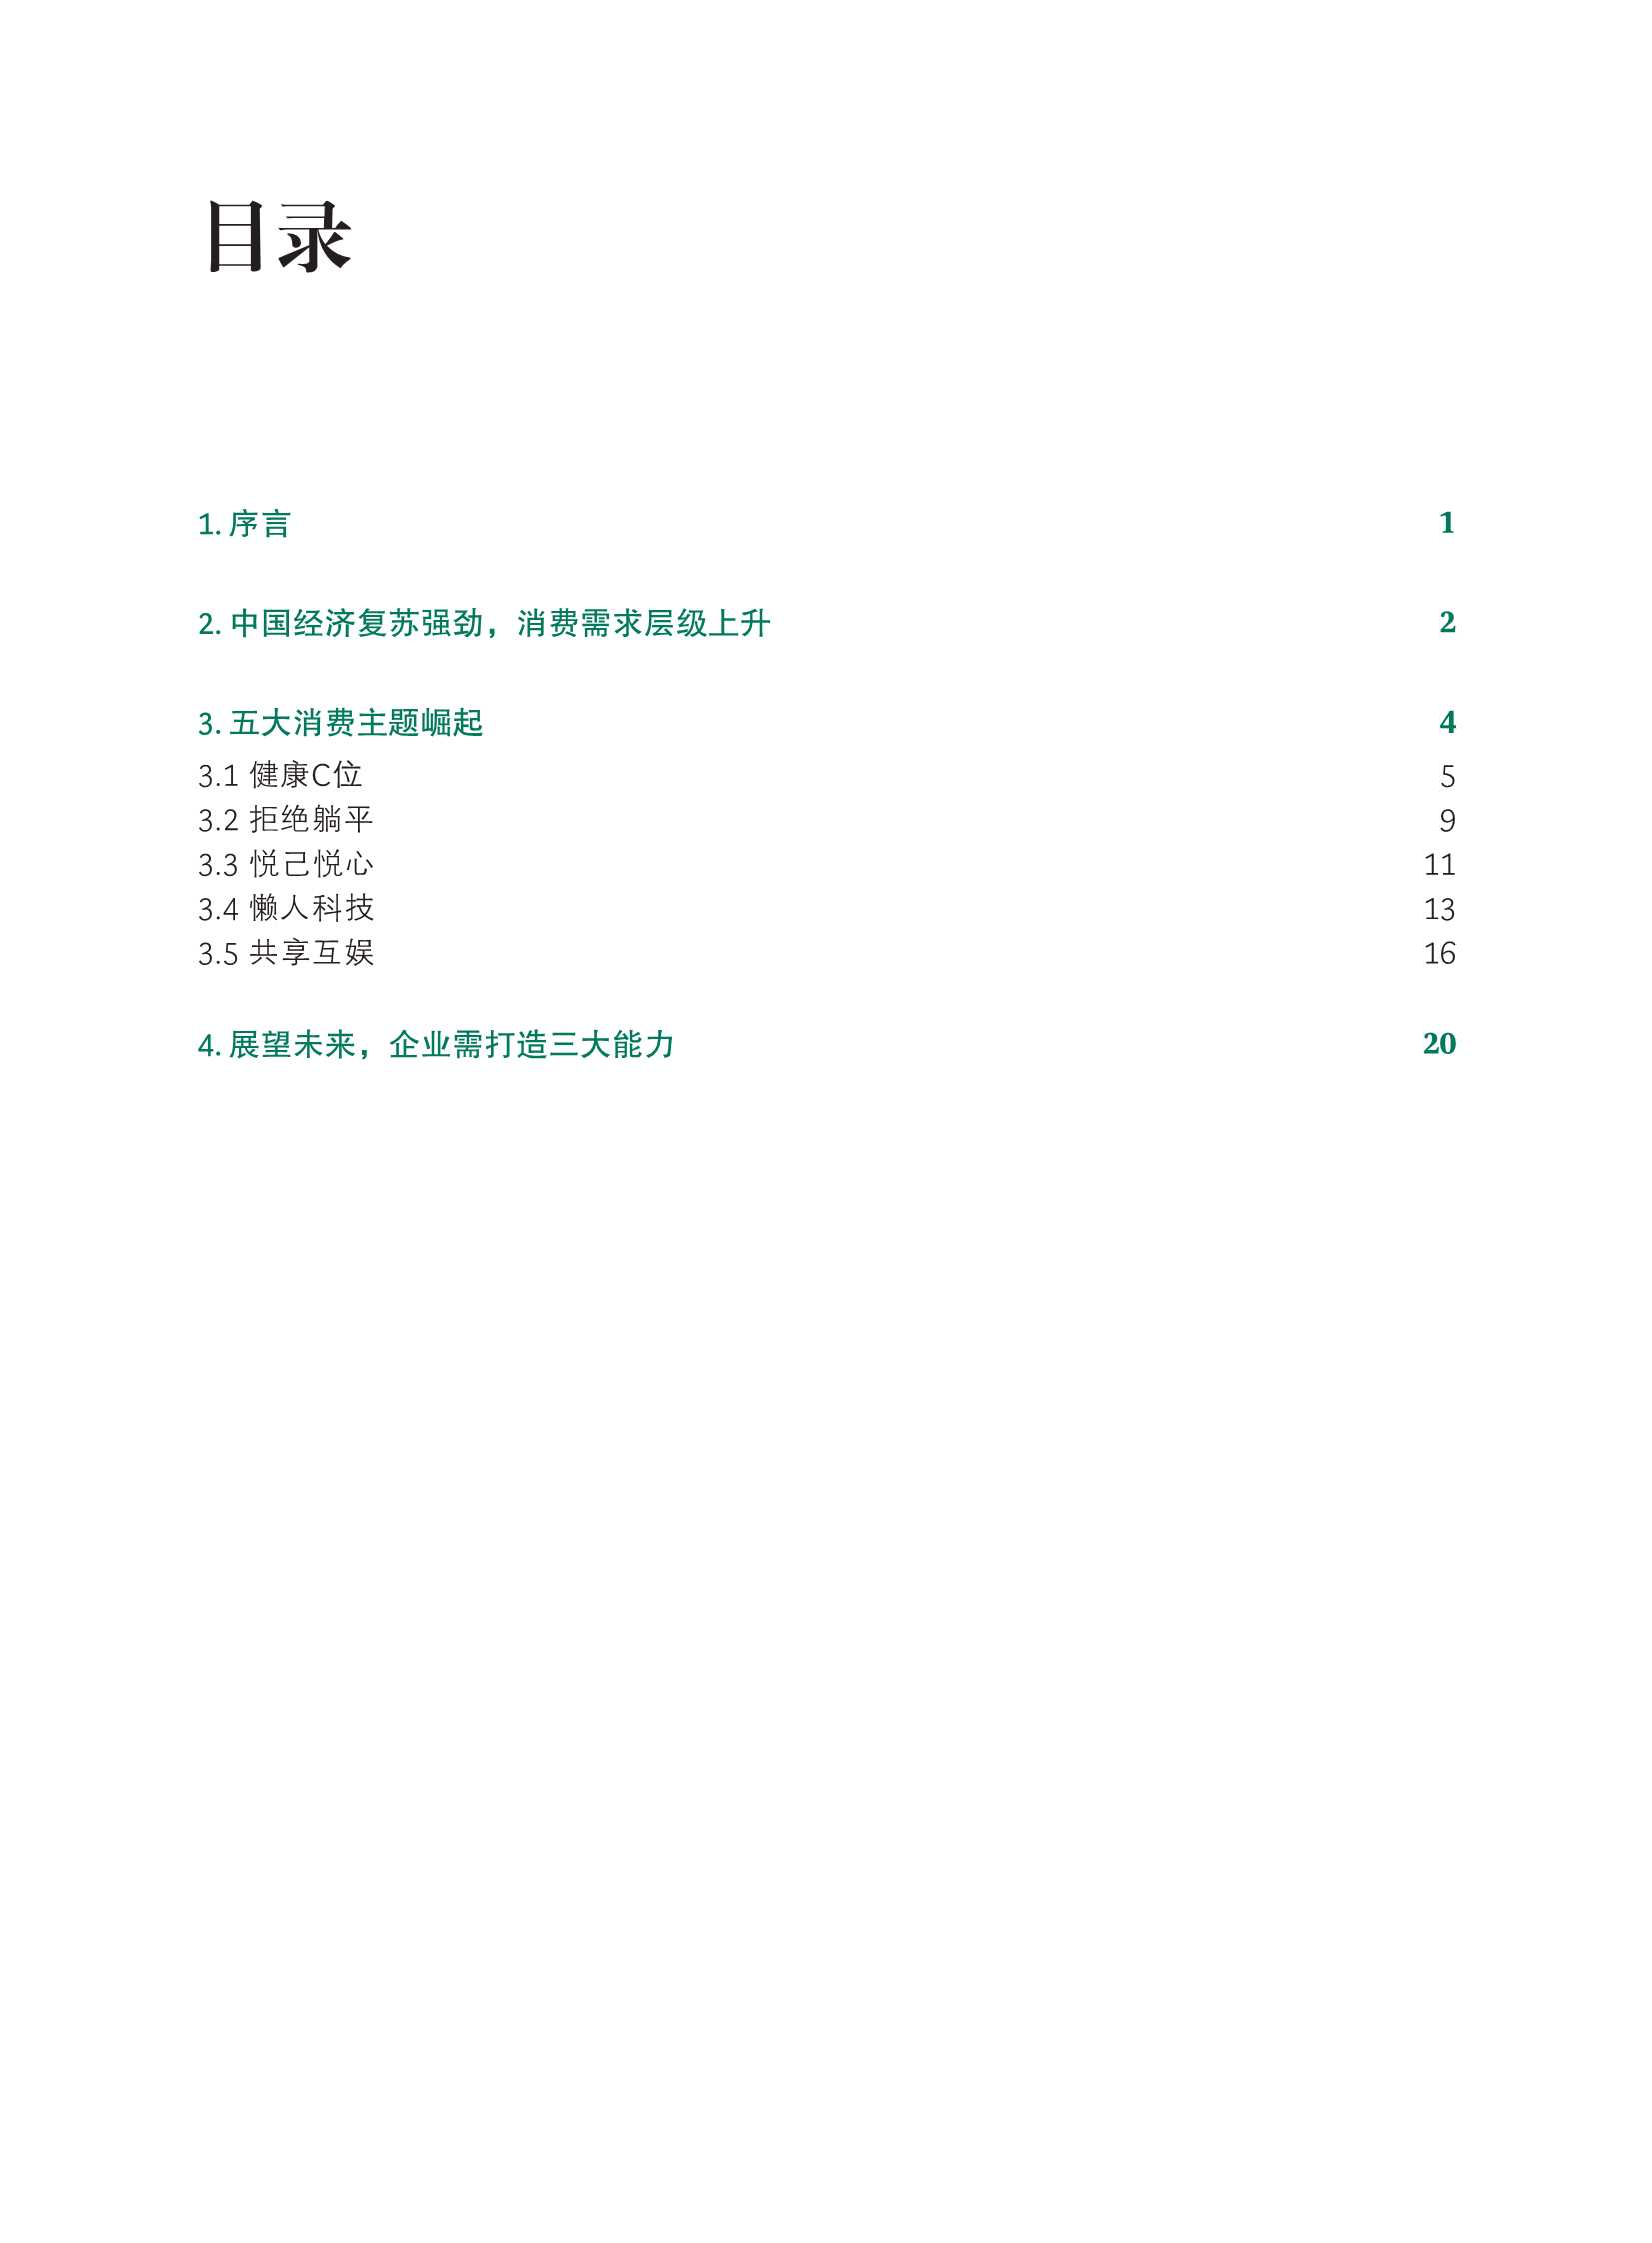 中国居民消费趋势报告-2021.12-28页